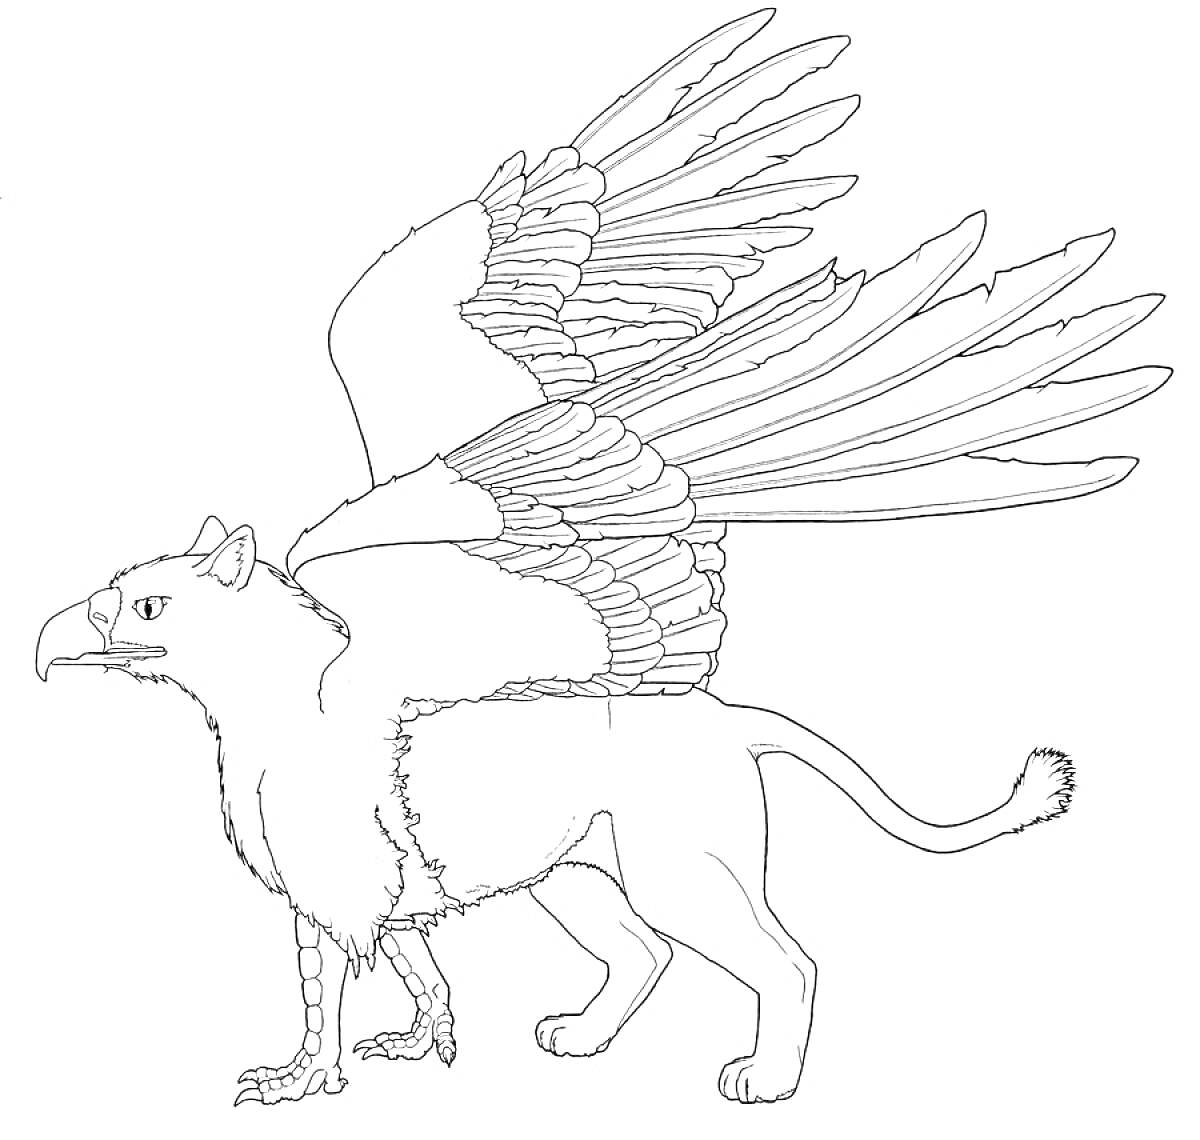 Грифон с орлиной головой, орлиными крыльями и телом льва.